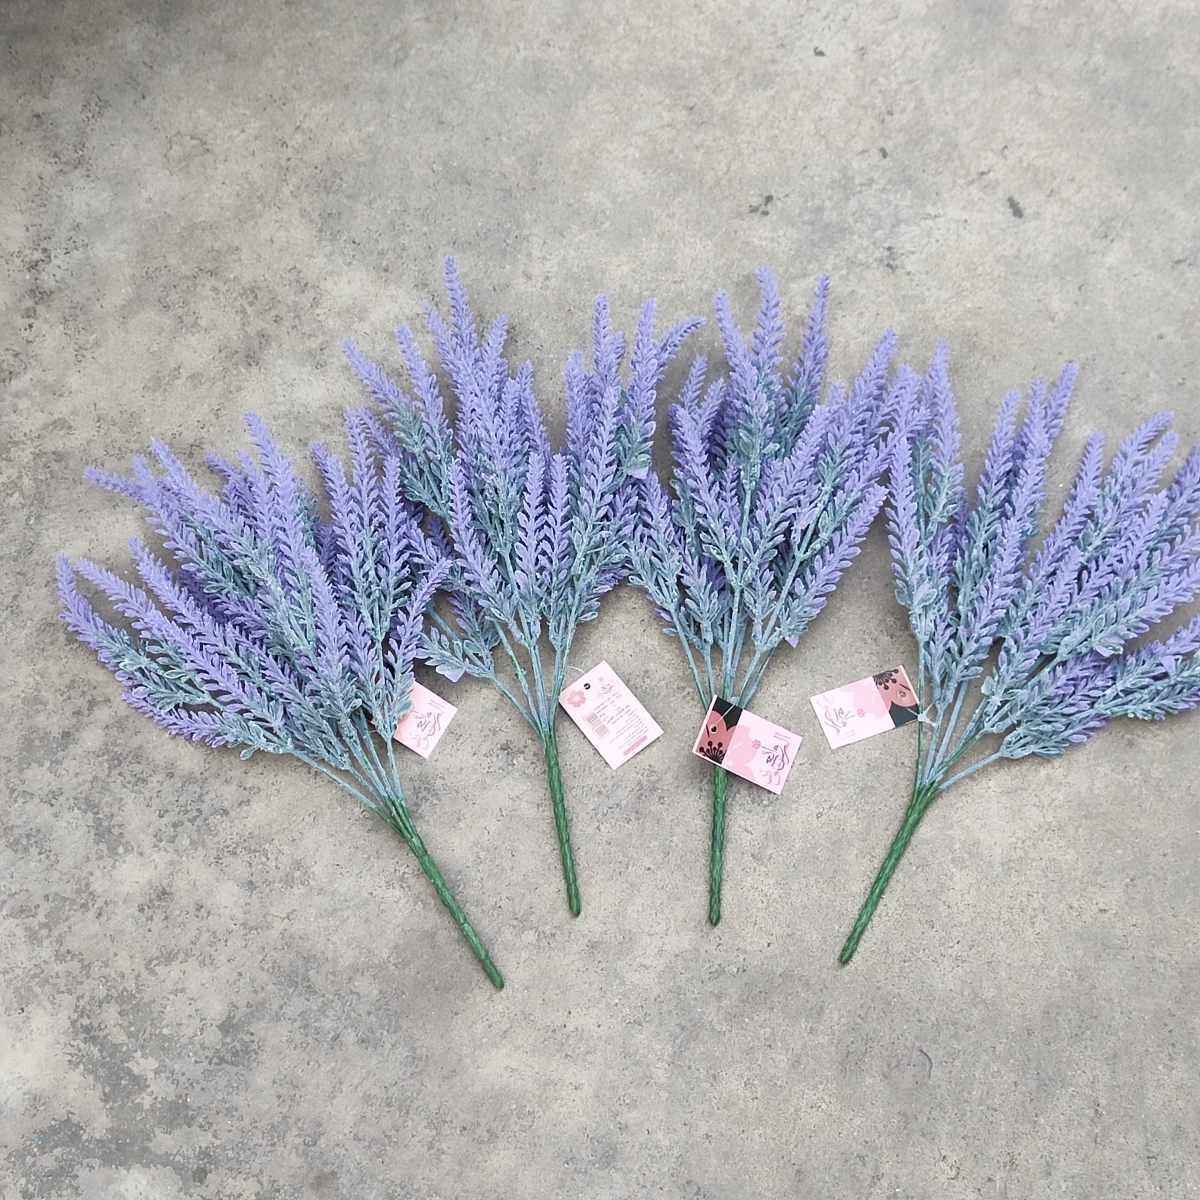 Ĉina artefarita lavenda florfabriko, plasta lavenda tigo, pogranda provizanto de falsaj floroj-Sunyfar Artefaritaj Floroj, Ĉina Fabriko, Provizanto, Fabrikisto, Pograndisto